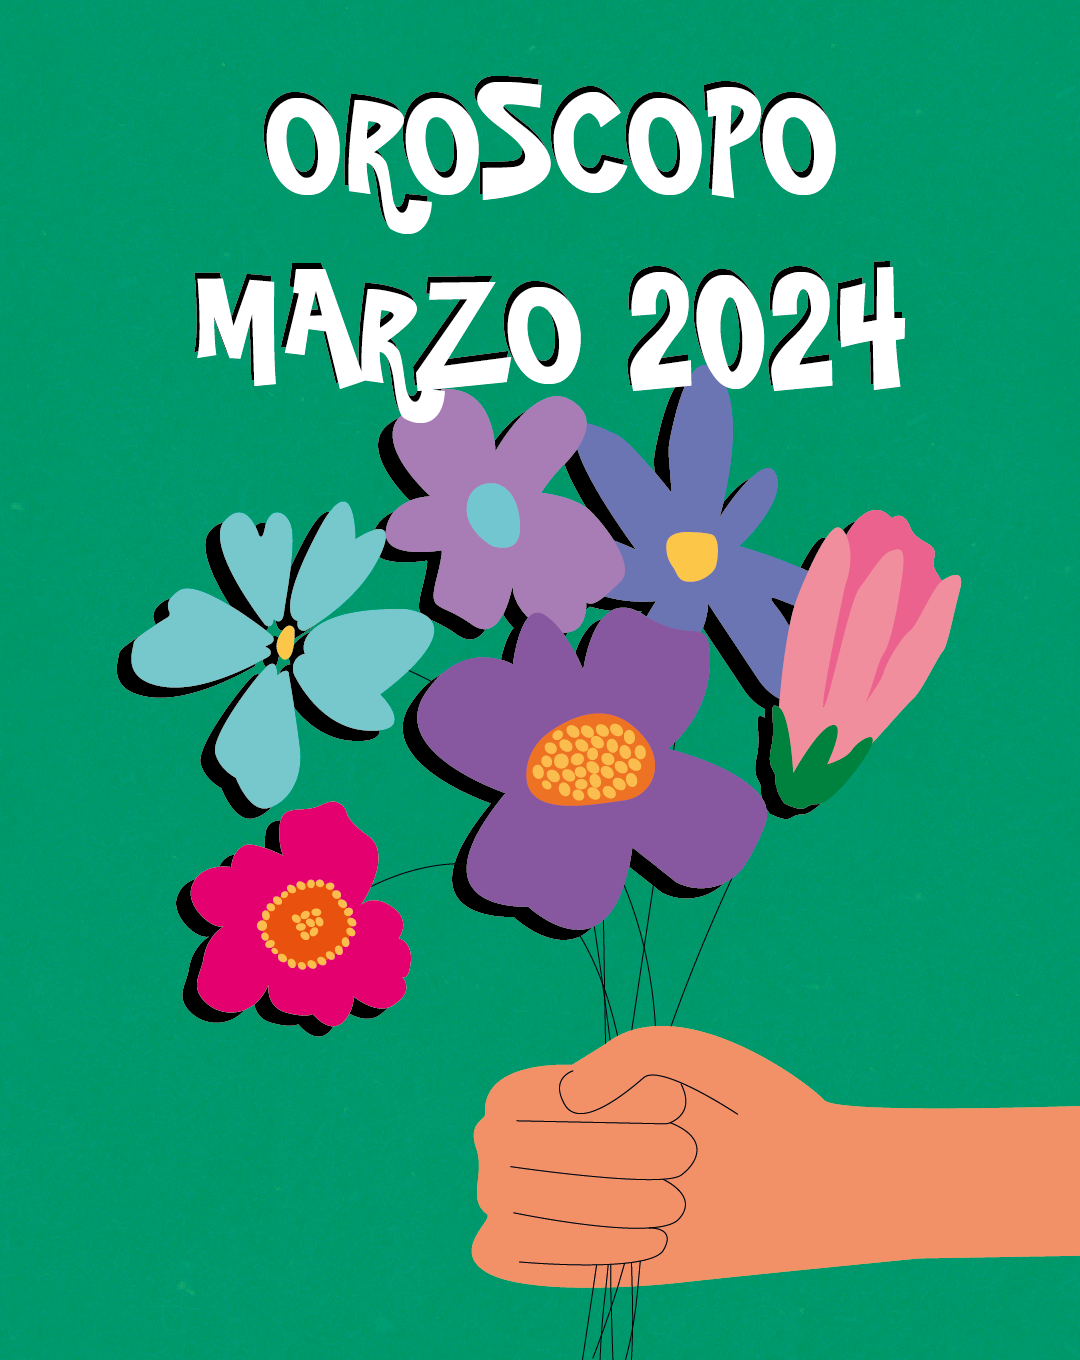 Oroscopo di marzo 2024 Le previsioni astrologiche e le date importanti da segnare in agenda, in salsa Oscar